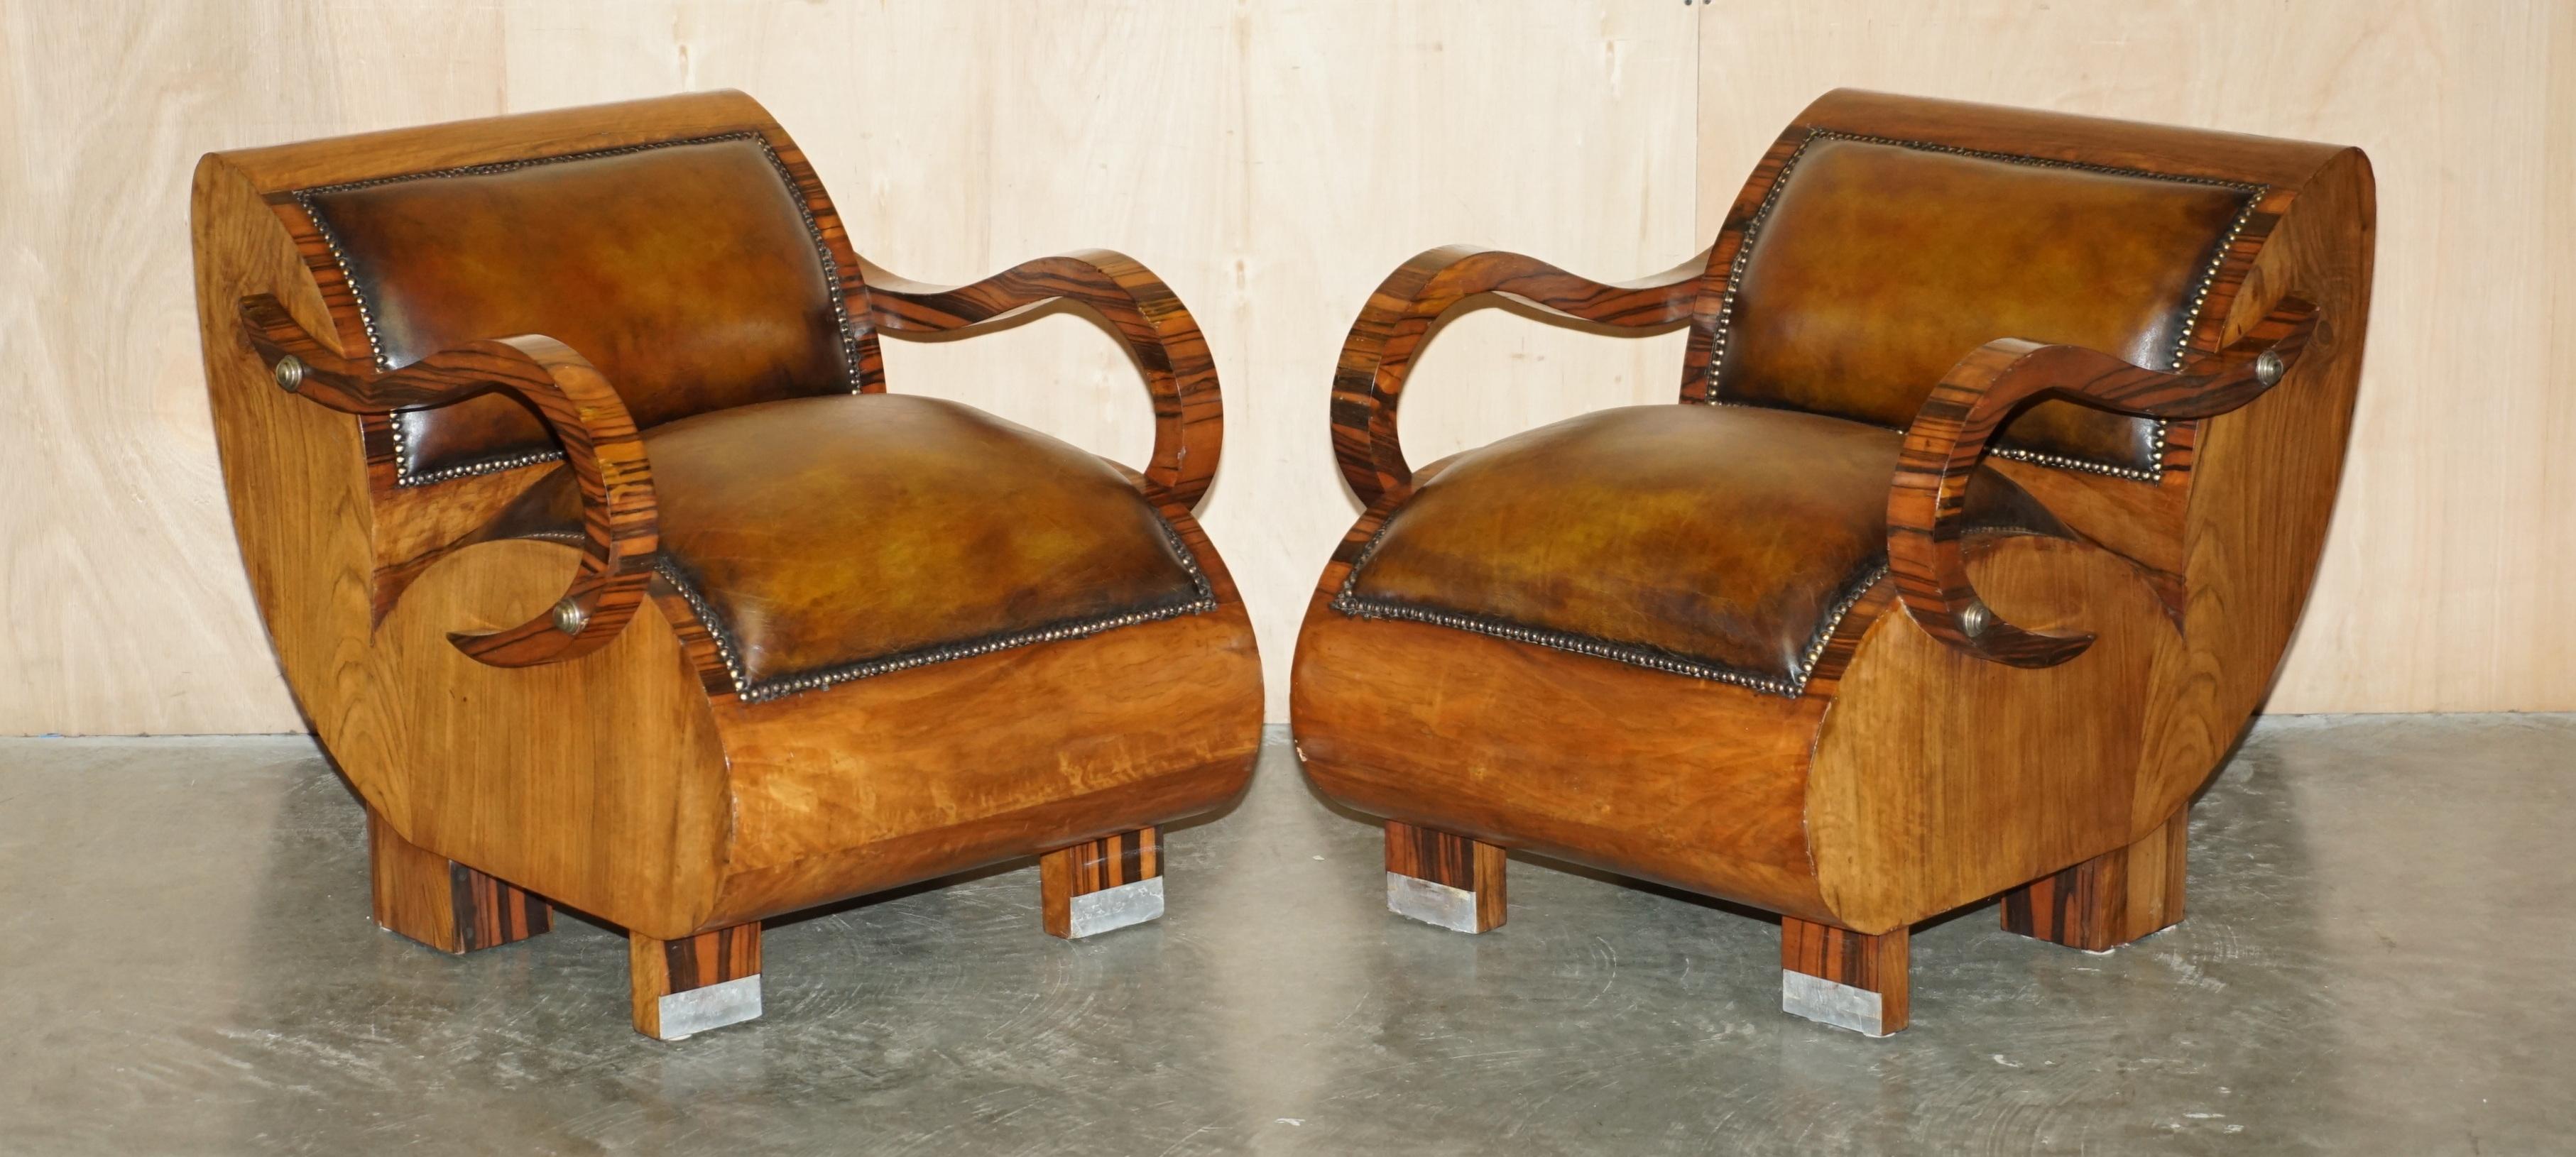 Royal House Antiques

Royal House Antiques freut sich, dieses atemberaubende, vollständig restaurierte Art Deco-Sofa und Sessel aus zigarrenbraunem Leder aus den 1920er Jahren mit Zebrano-Holzrahmen und Polsterung aus italienischem Russet-Leder zum